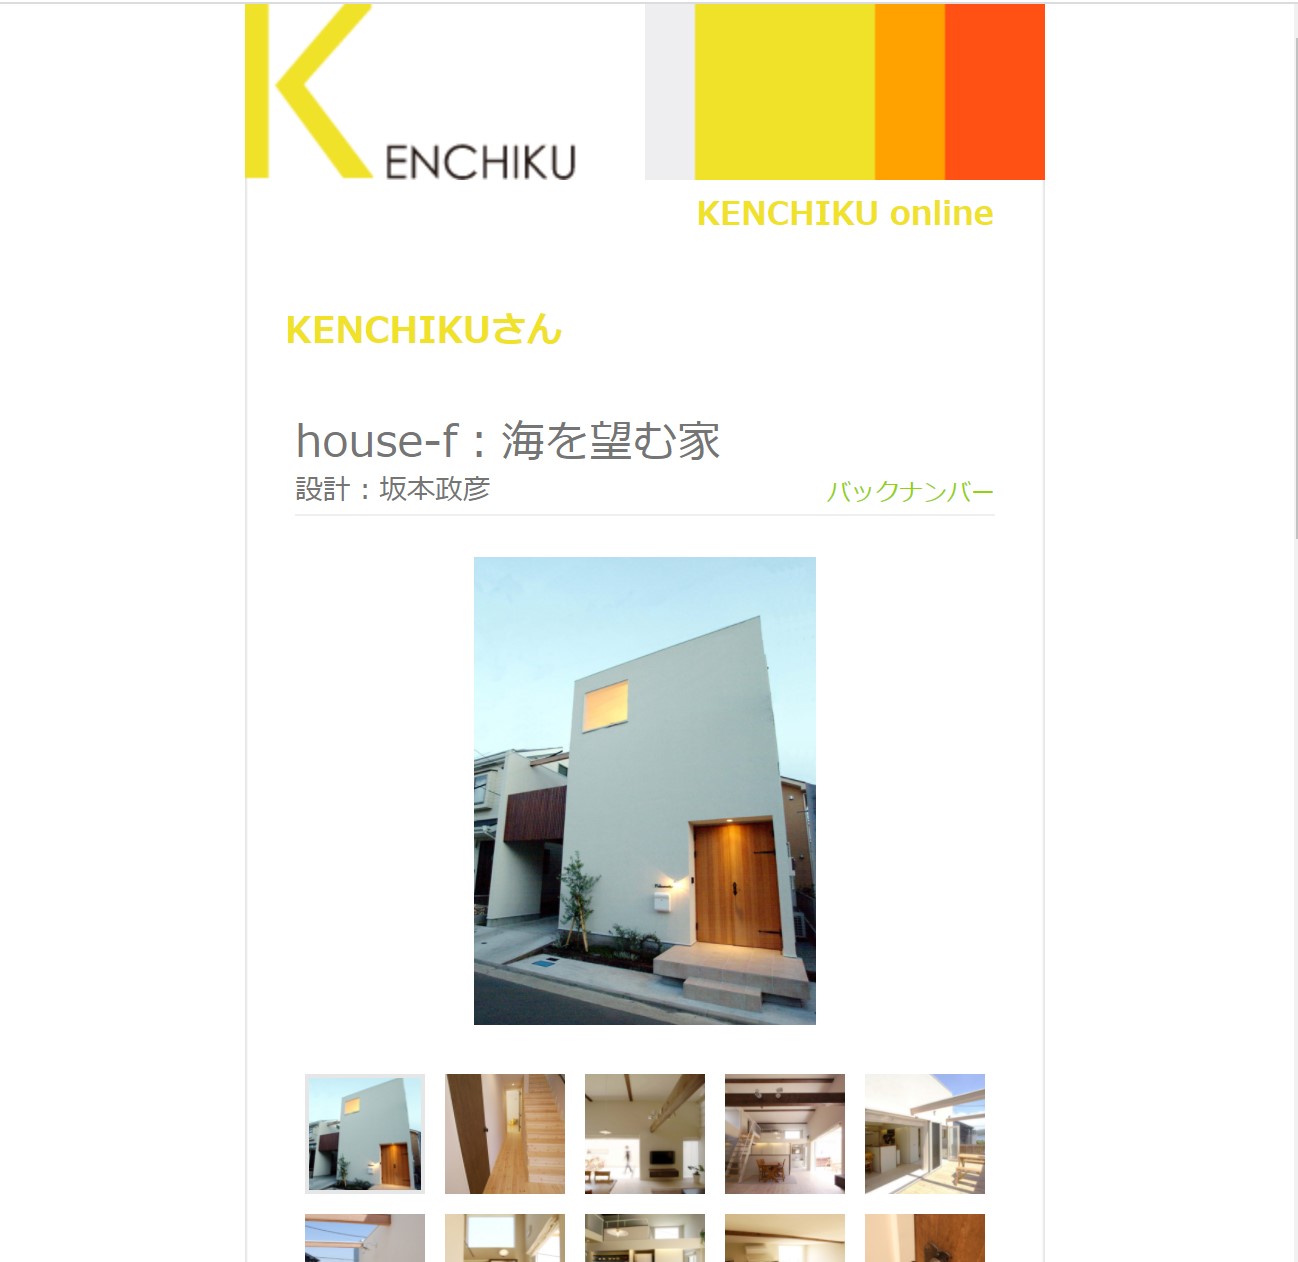 神奈川横須賀で建てる狭小デザイン住宅